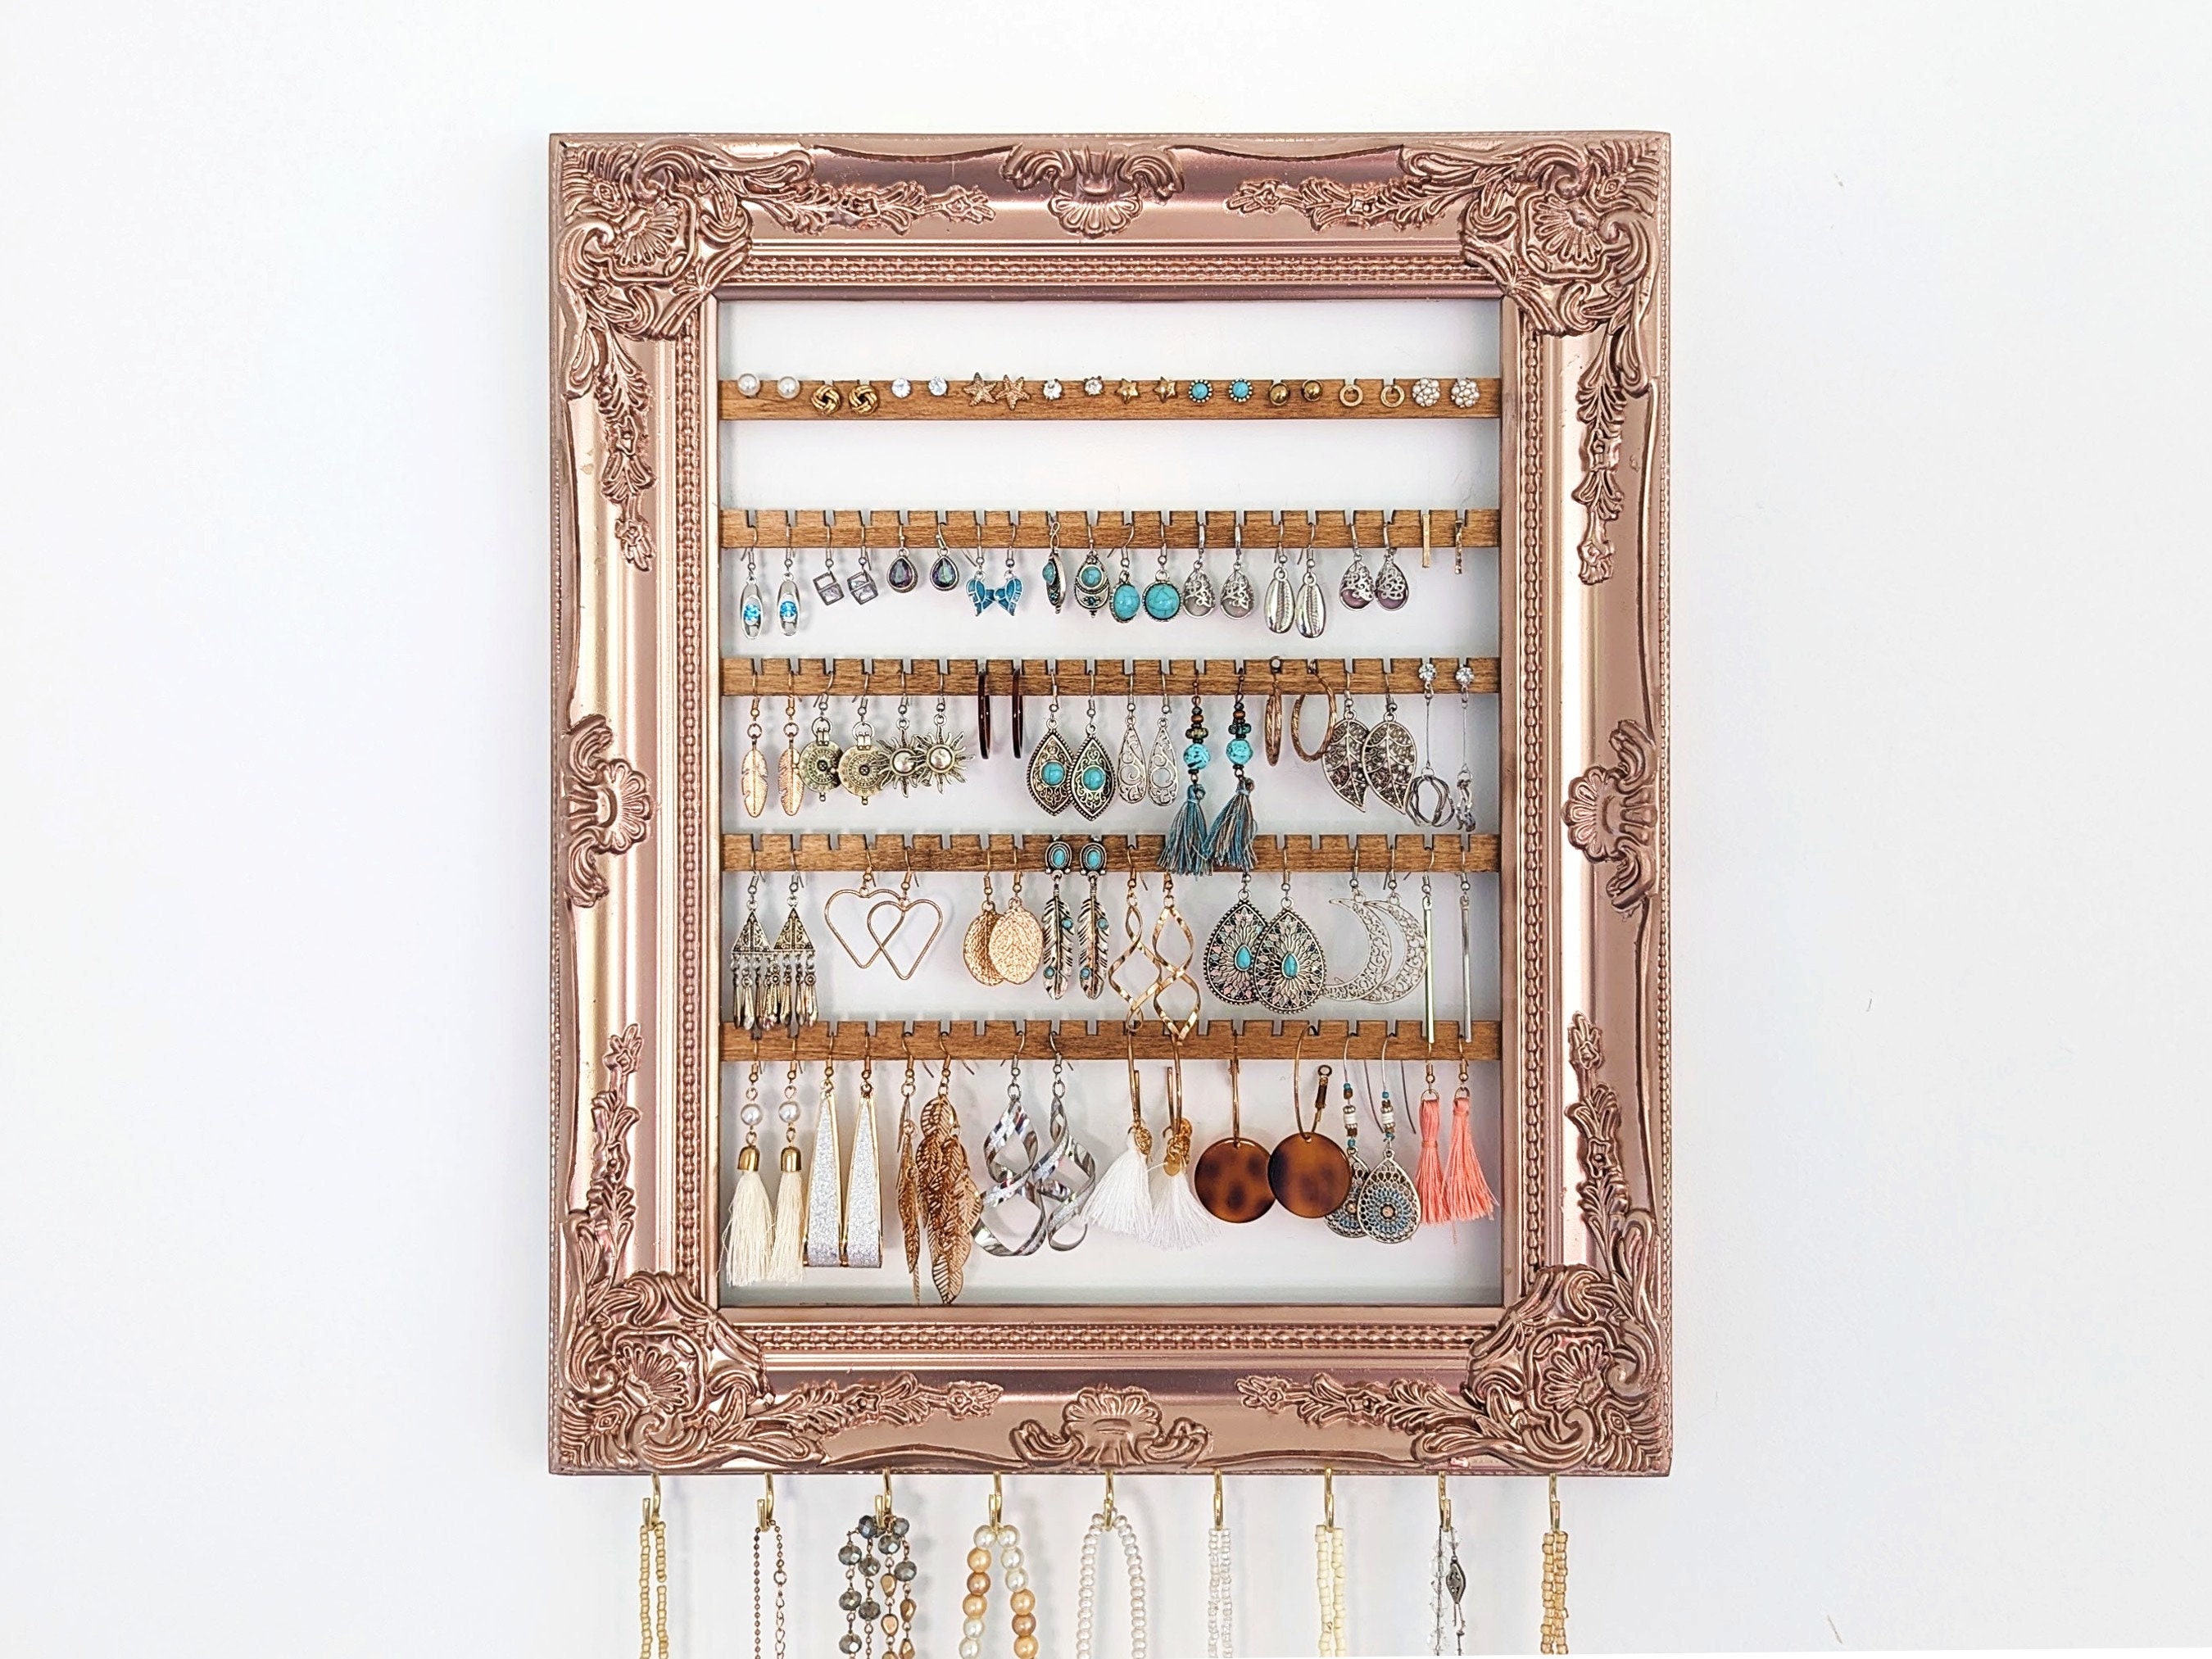 Angelynn's Stud Earring Holder Organizer Wall Mount Jewelry Storage Rack, Earring Angel Blue